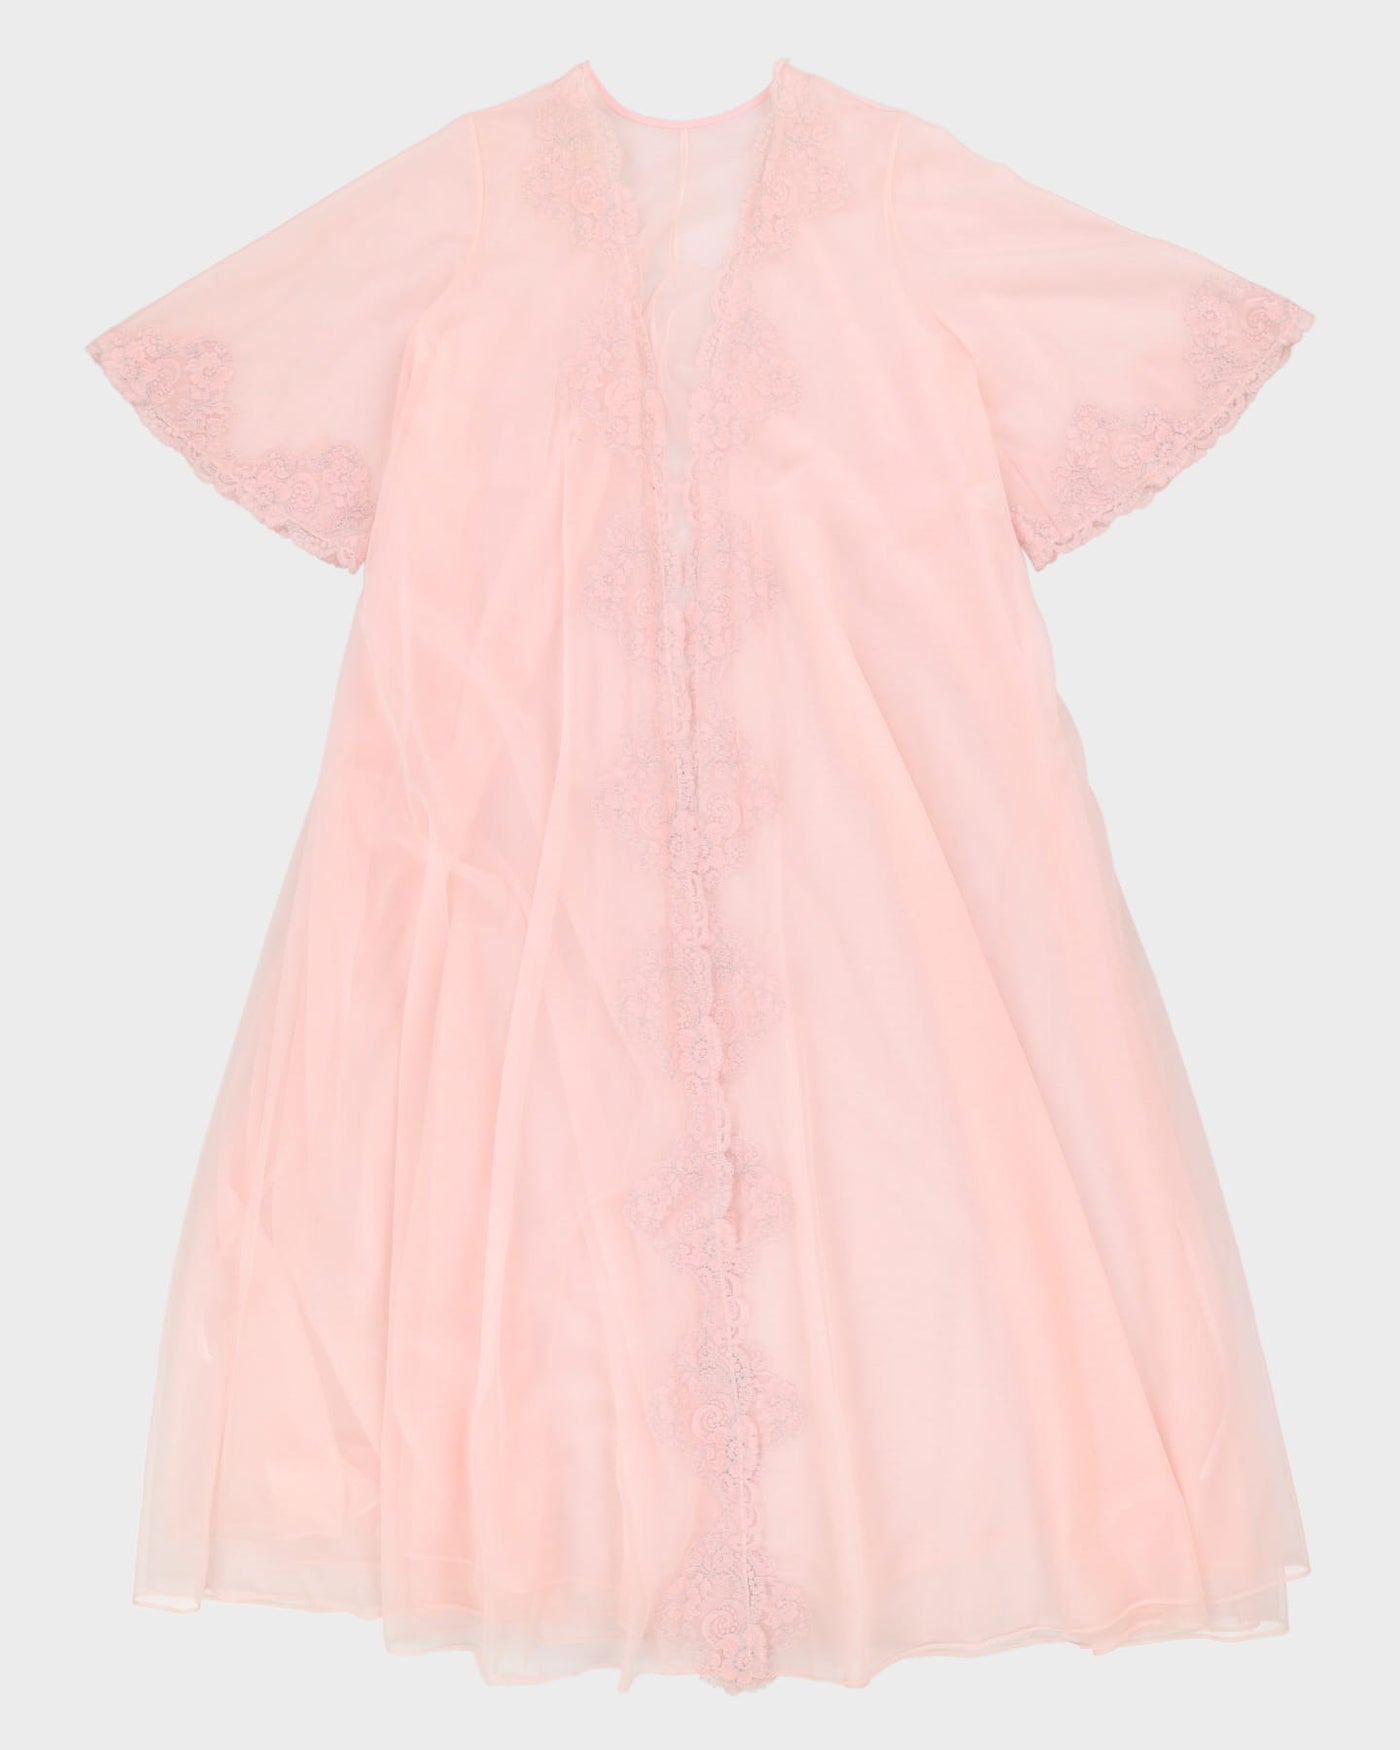 Vintage 1970s Pink Peignoir Dressing Gown - M / L